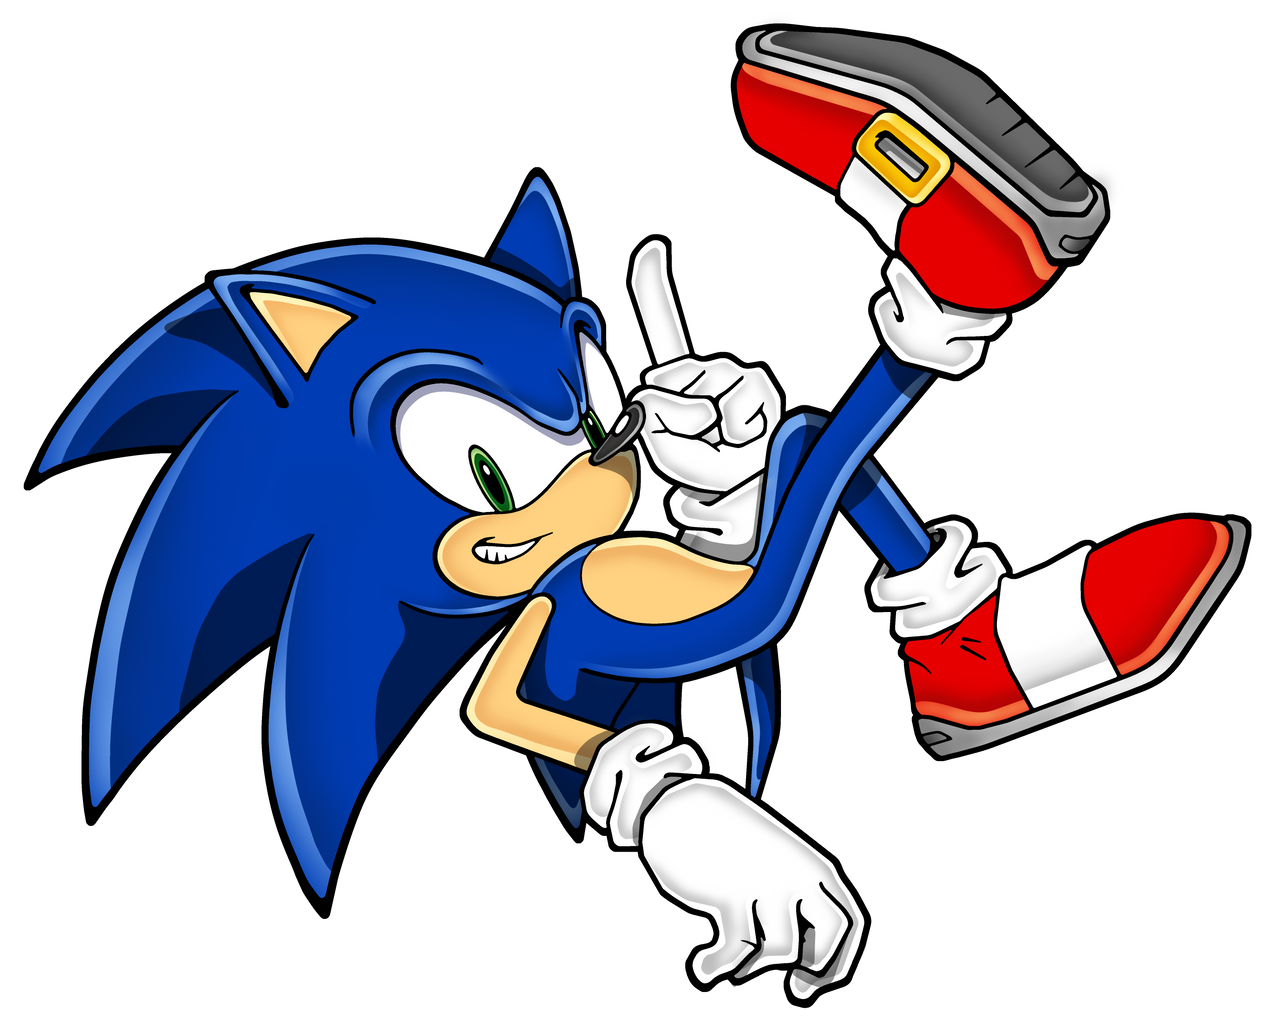 Sonic again